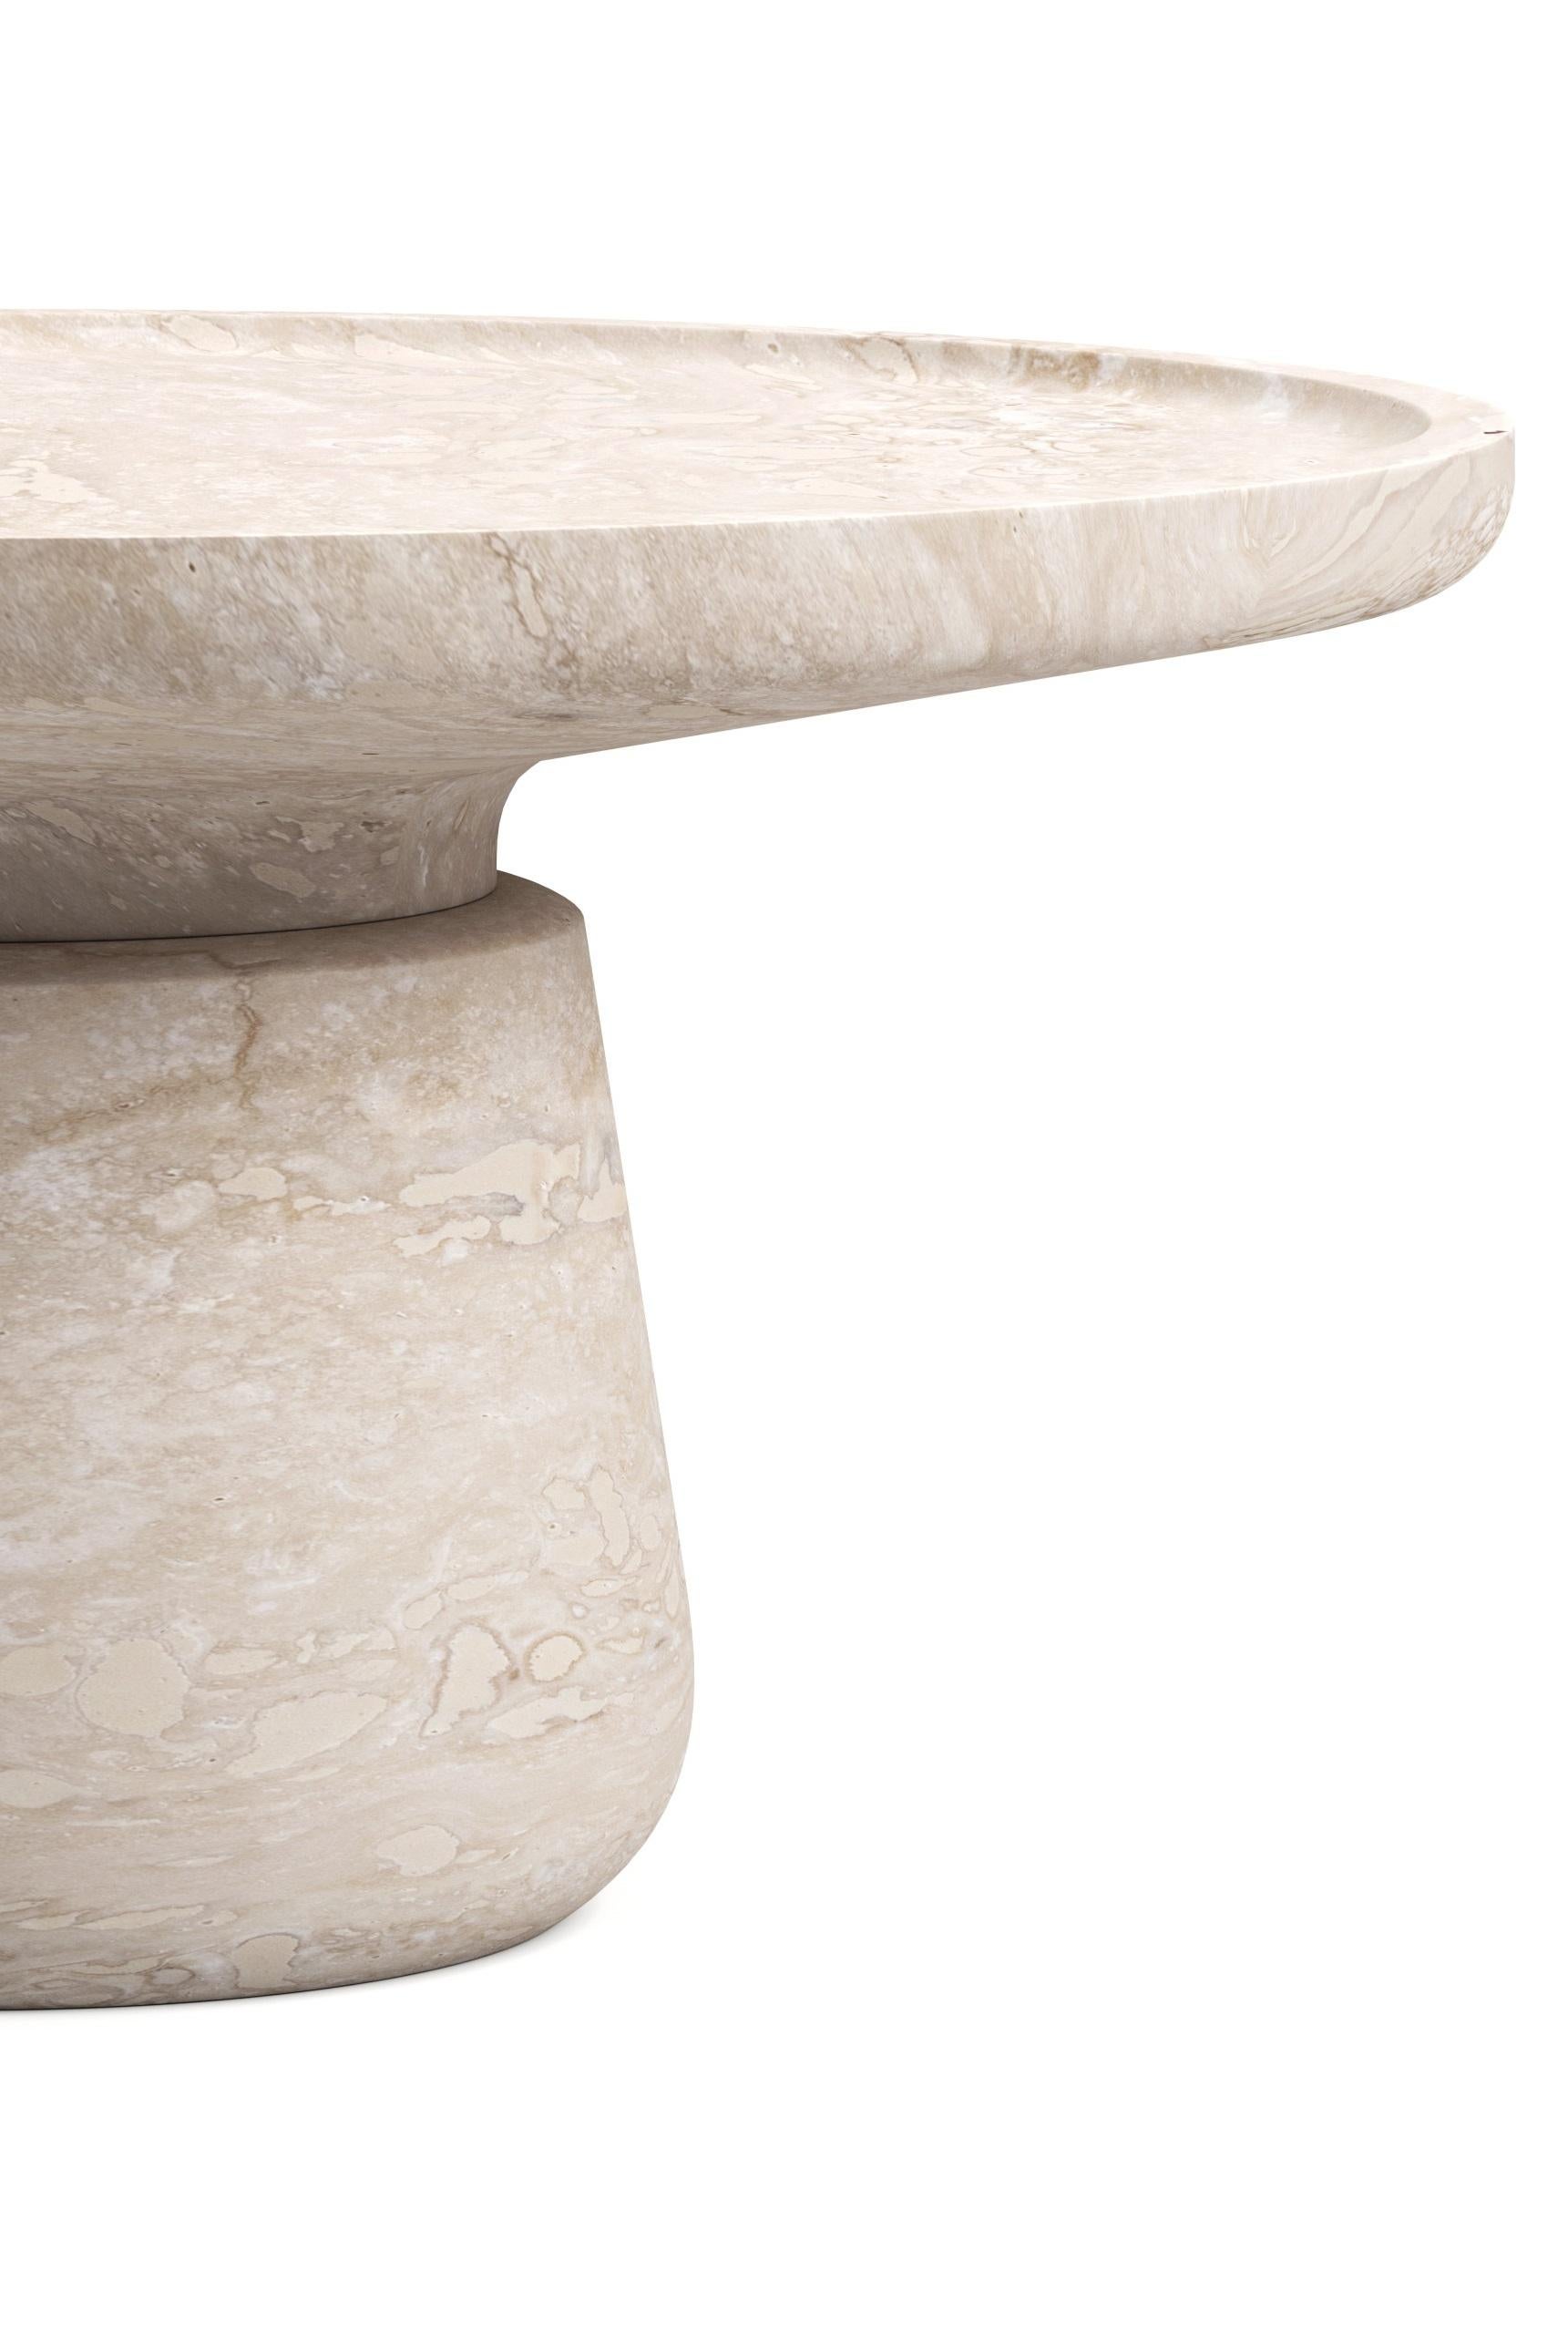 Altana Large Side Table by Ivan Colominas
Dimensions : Ø 75 x H 36 cm
Matériaux : Marbre Travertino.

Disponible en différentes options de marbre et en différentes tailles. Veuillez nous contacter.

À l'instar des terrasses en forme de tourelles que